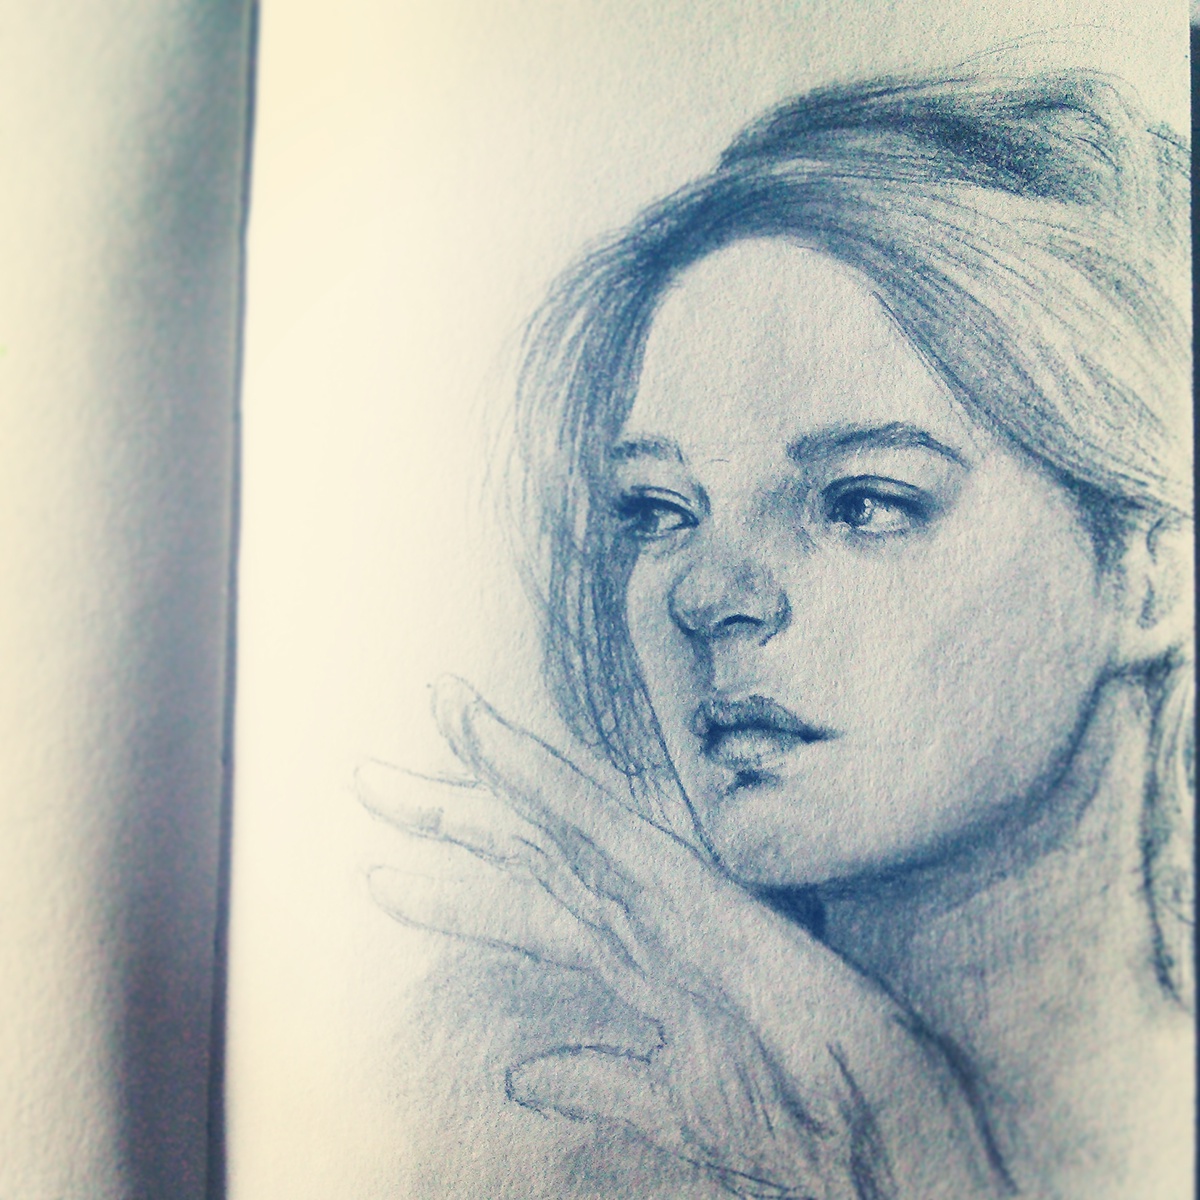 portrait portraits face people pencil graphite sketch sketchbook pencil sketch doodle charcoal